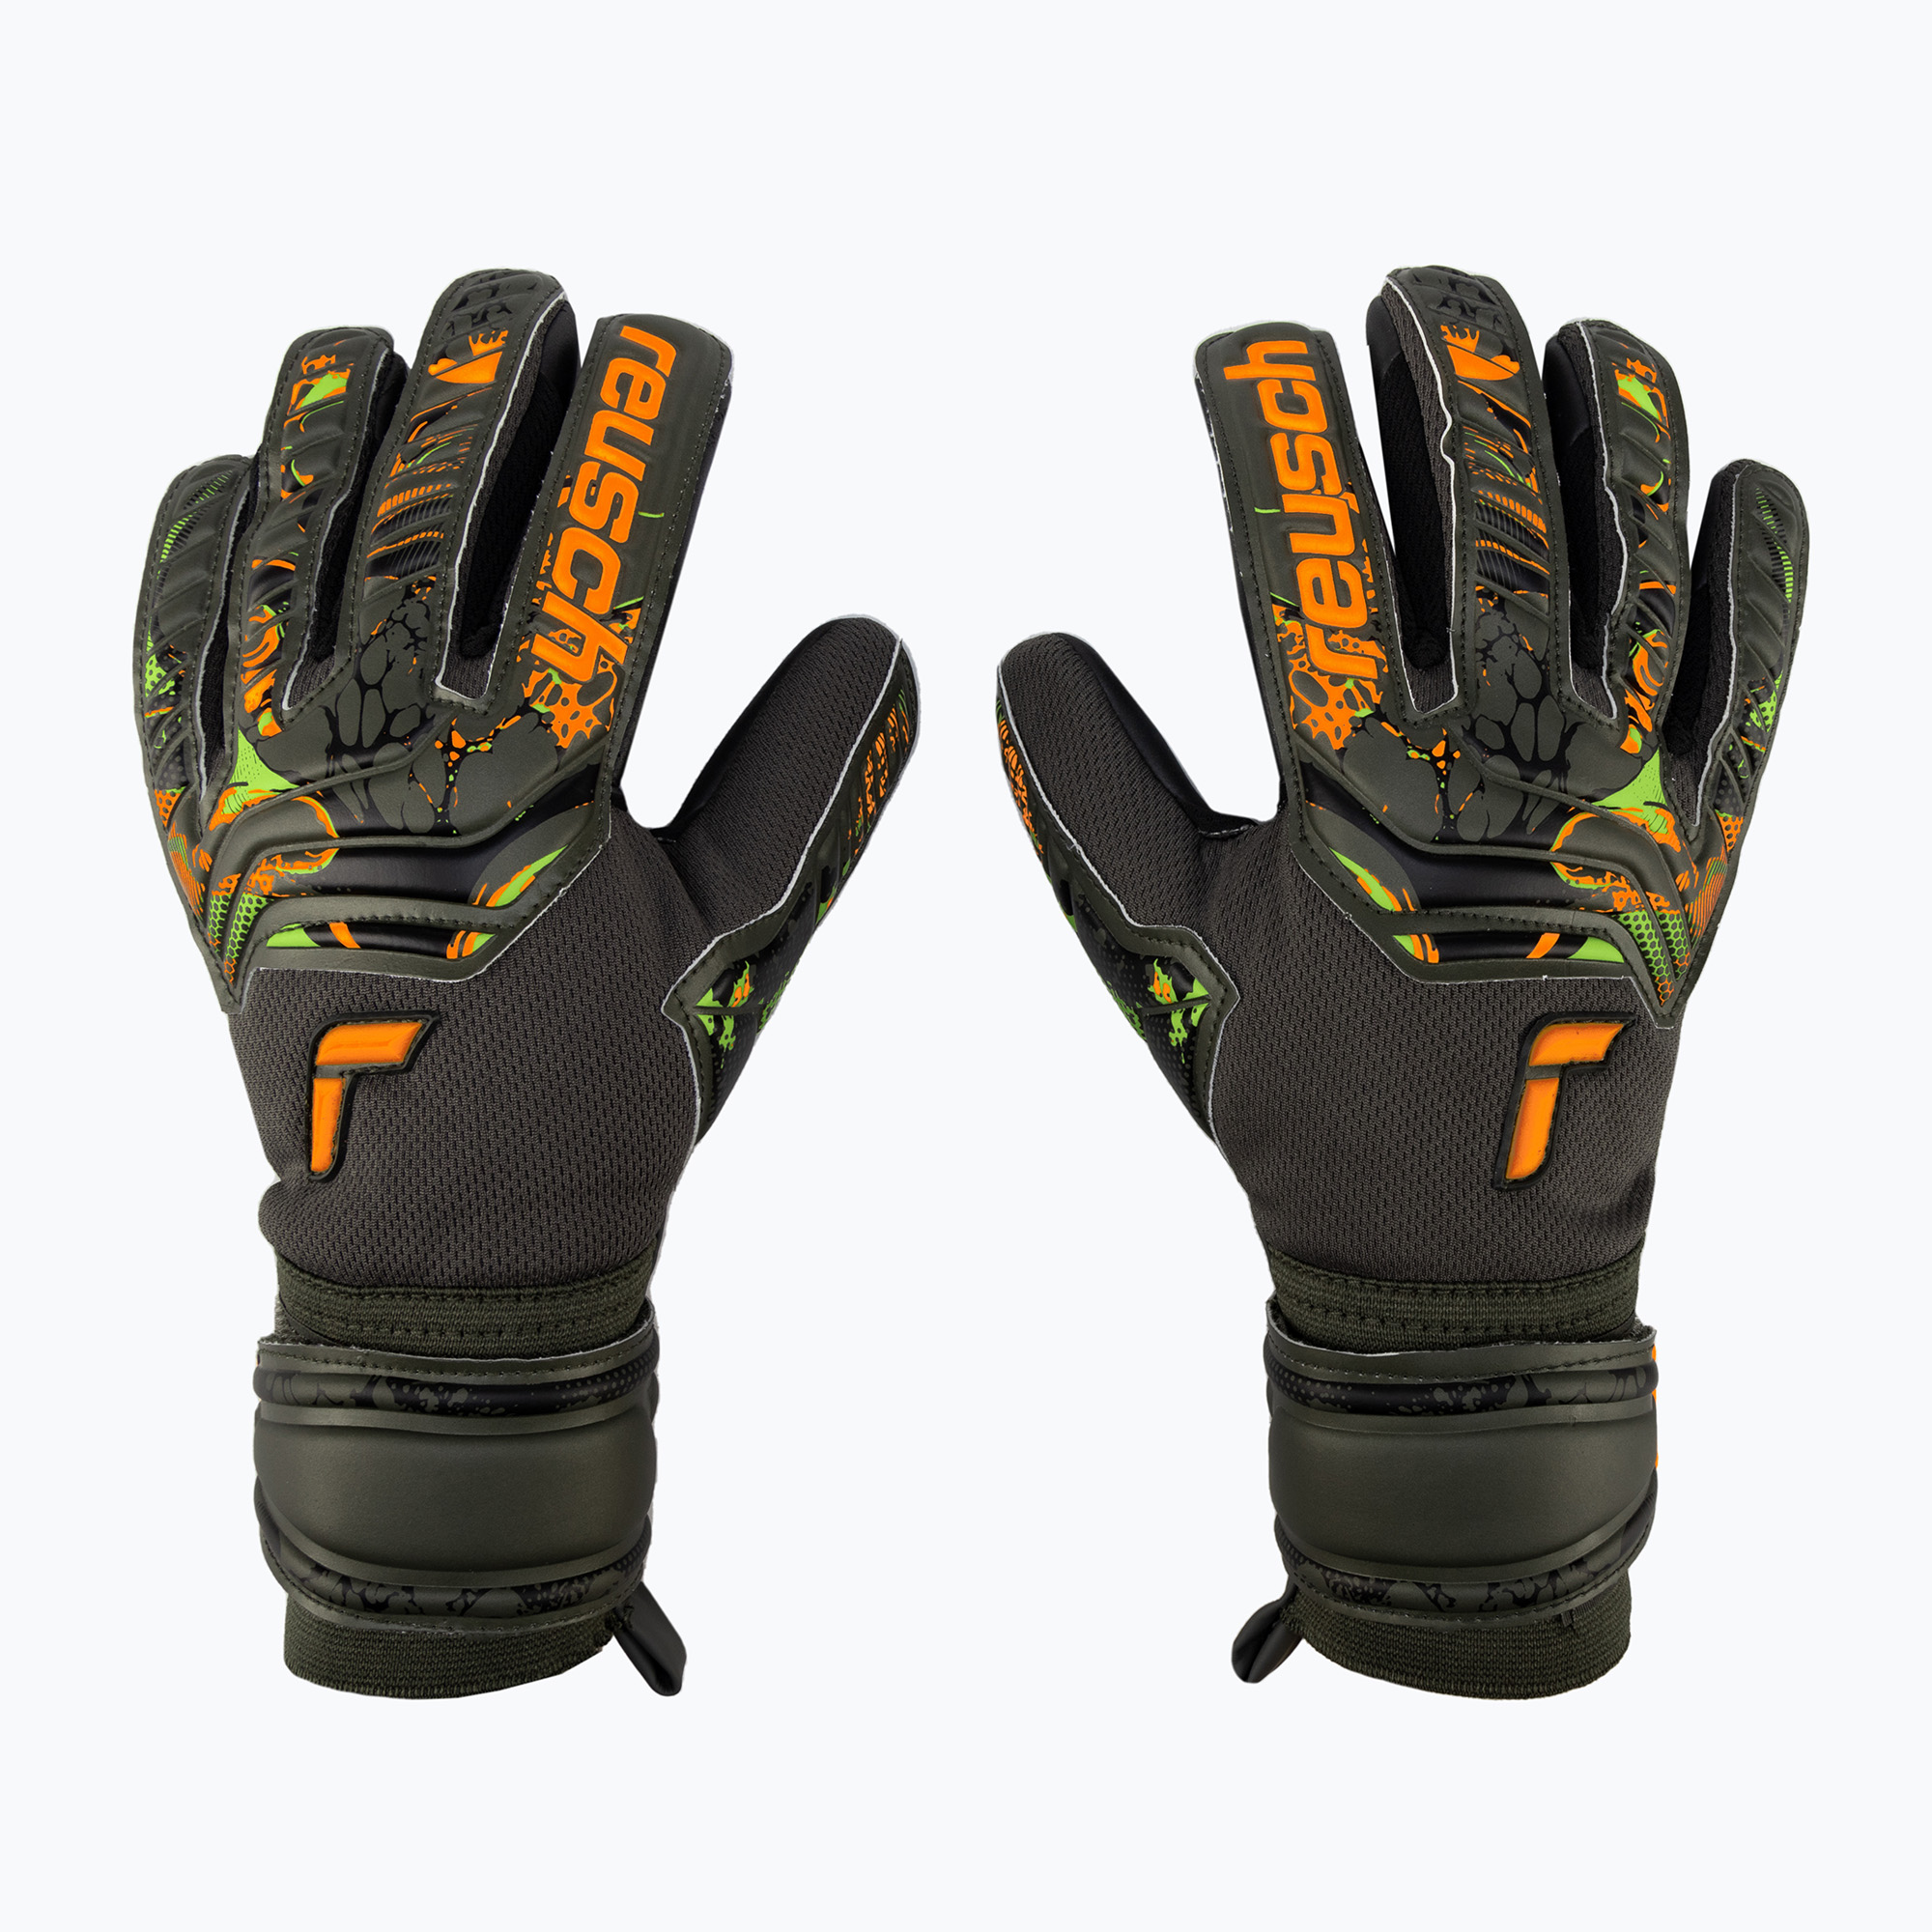 Reusch Attrakt Grip Evolution вратарски ръкавици зелени 5370825-5555